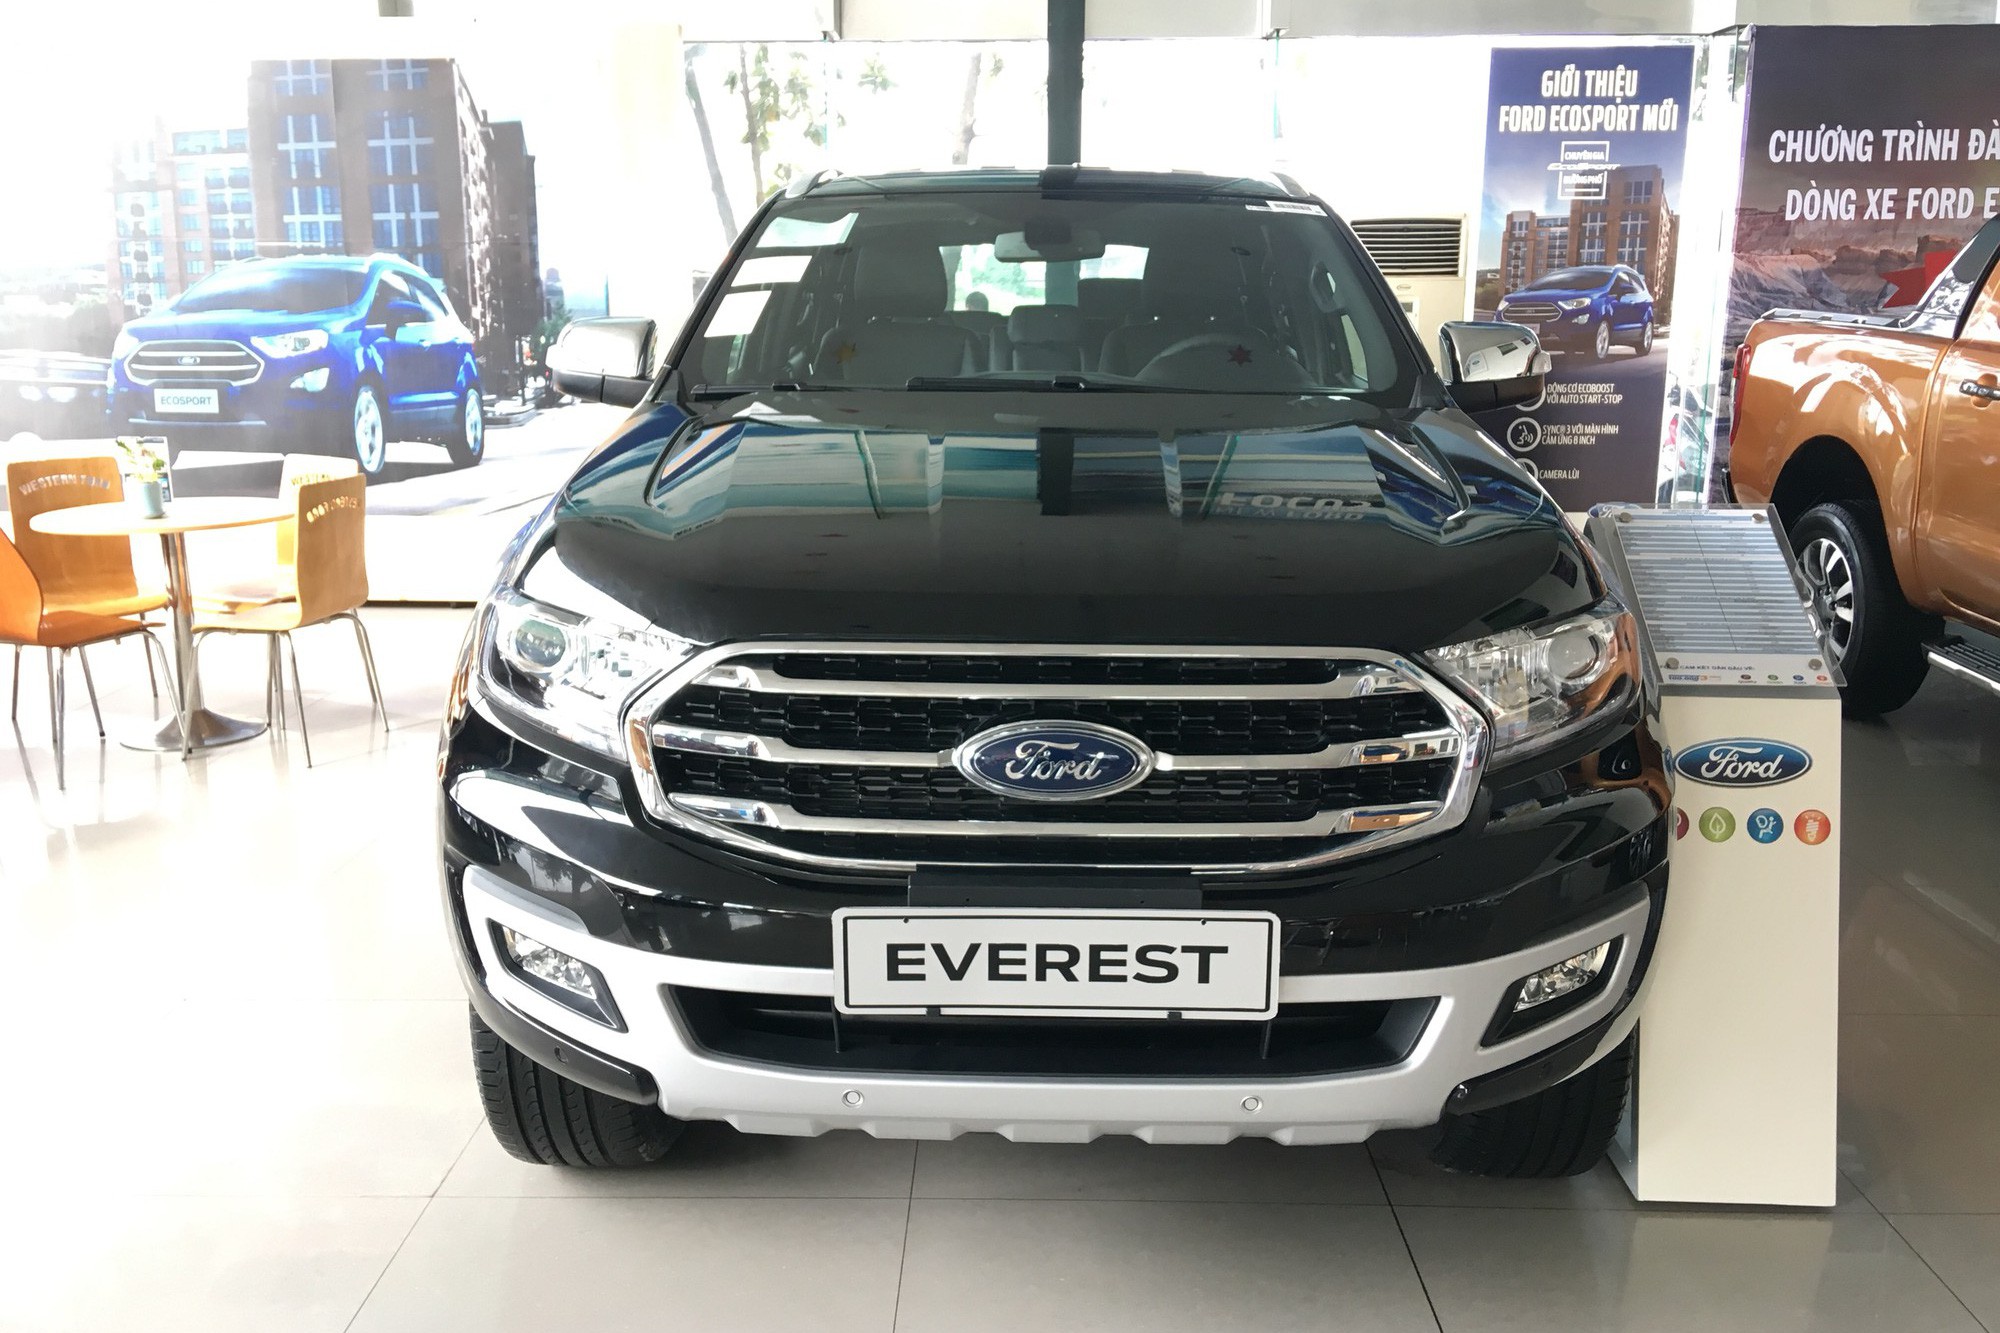 Ford Everest giảm giá hàng trăm triệu đồng